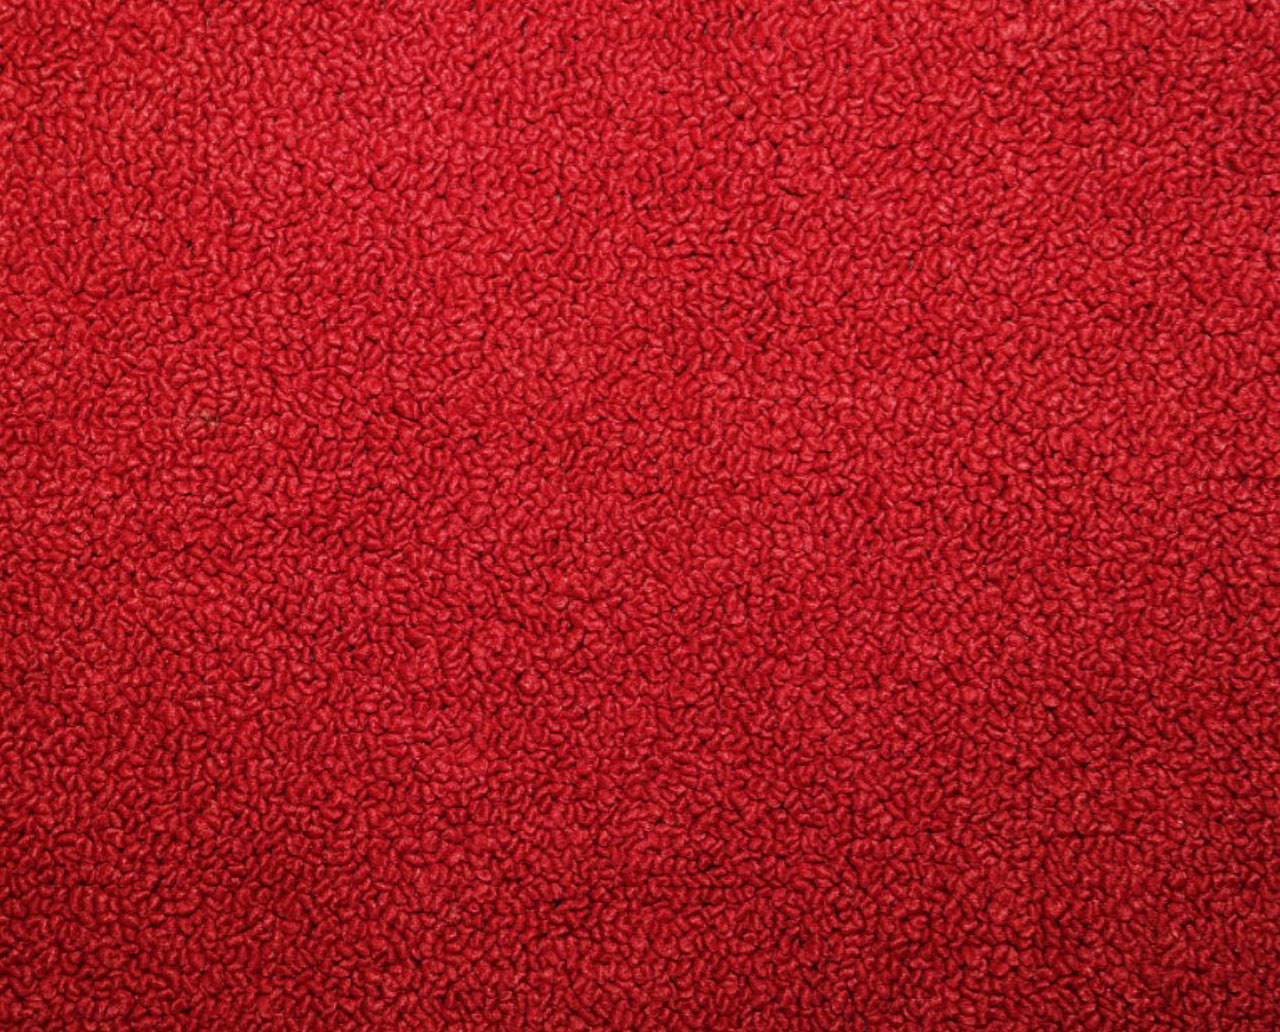 Holden Kingswood HK Kingswood Ute 12F Goya Red Carpet (Image 1 of 1)